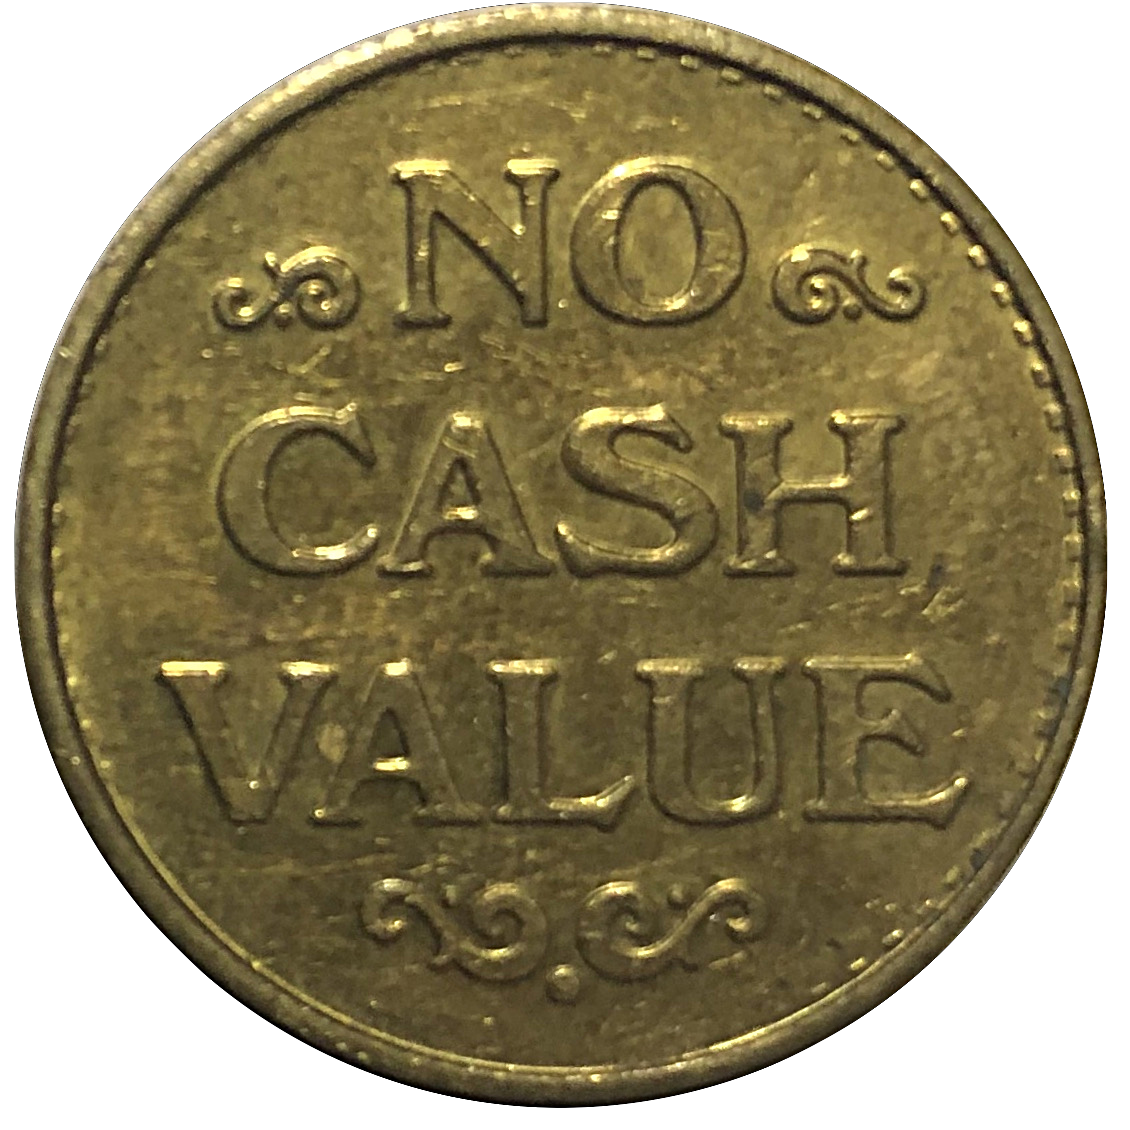 no cash value — technically crypto has none! (bad joke, sorry)